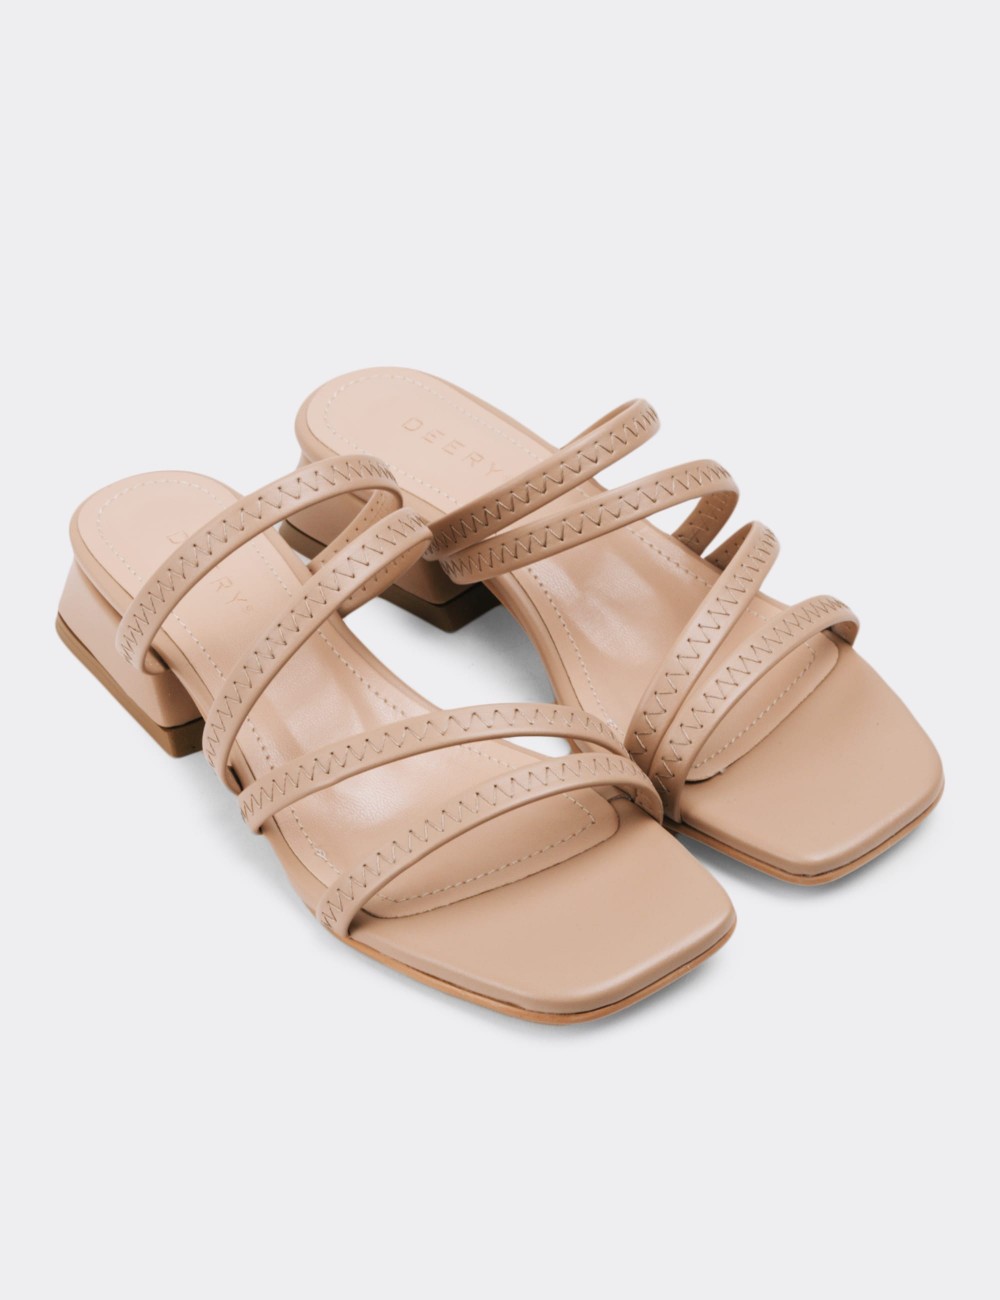 Beige Sandals - N1515ZBEJM01